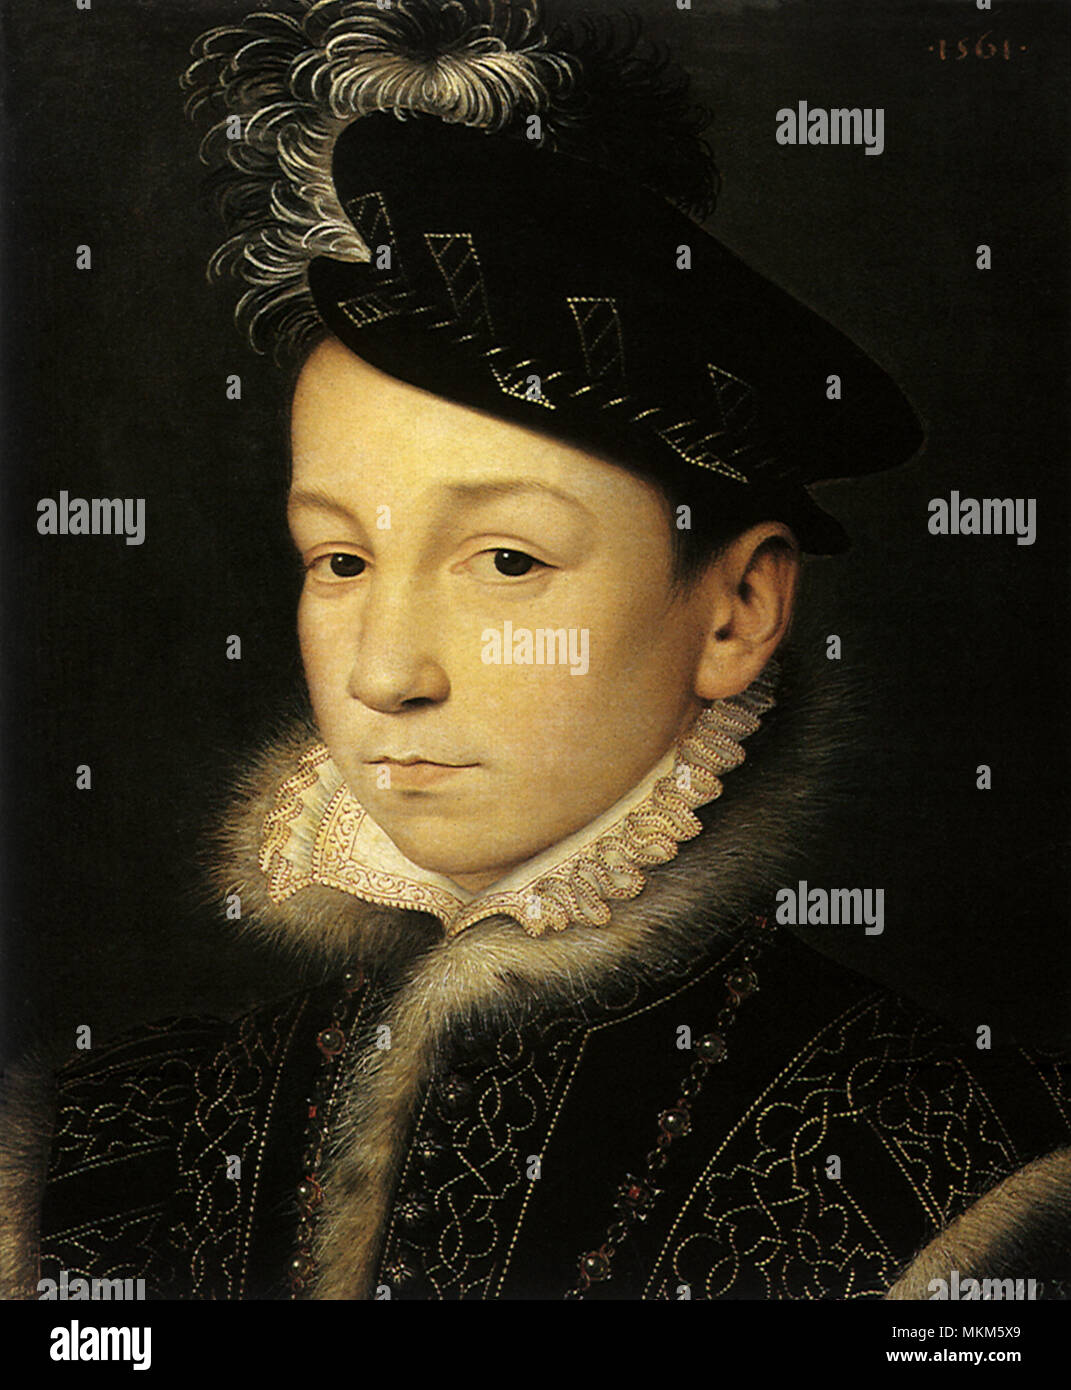 Charles IX 1561 Foto de stock